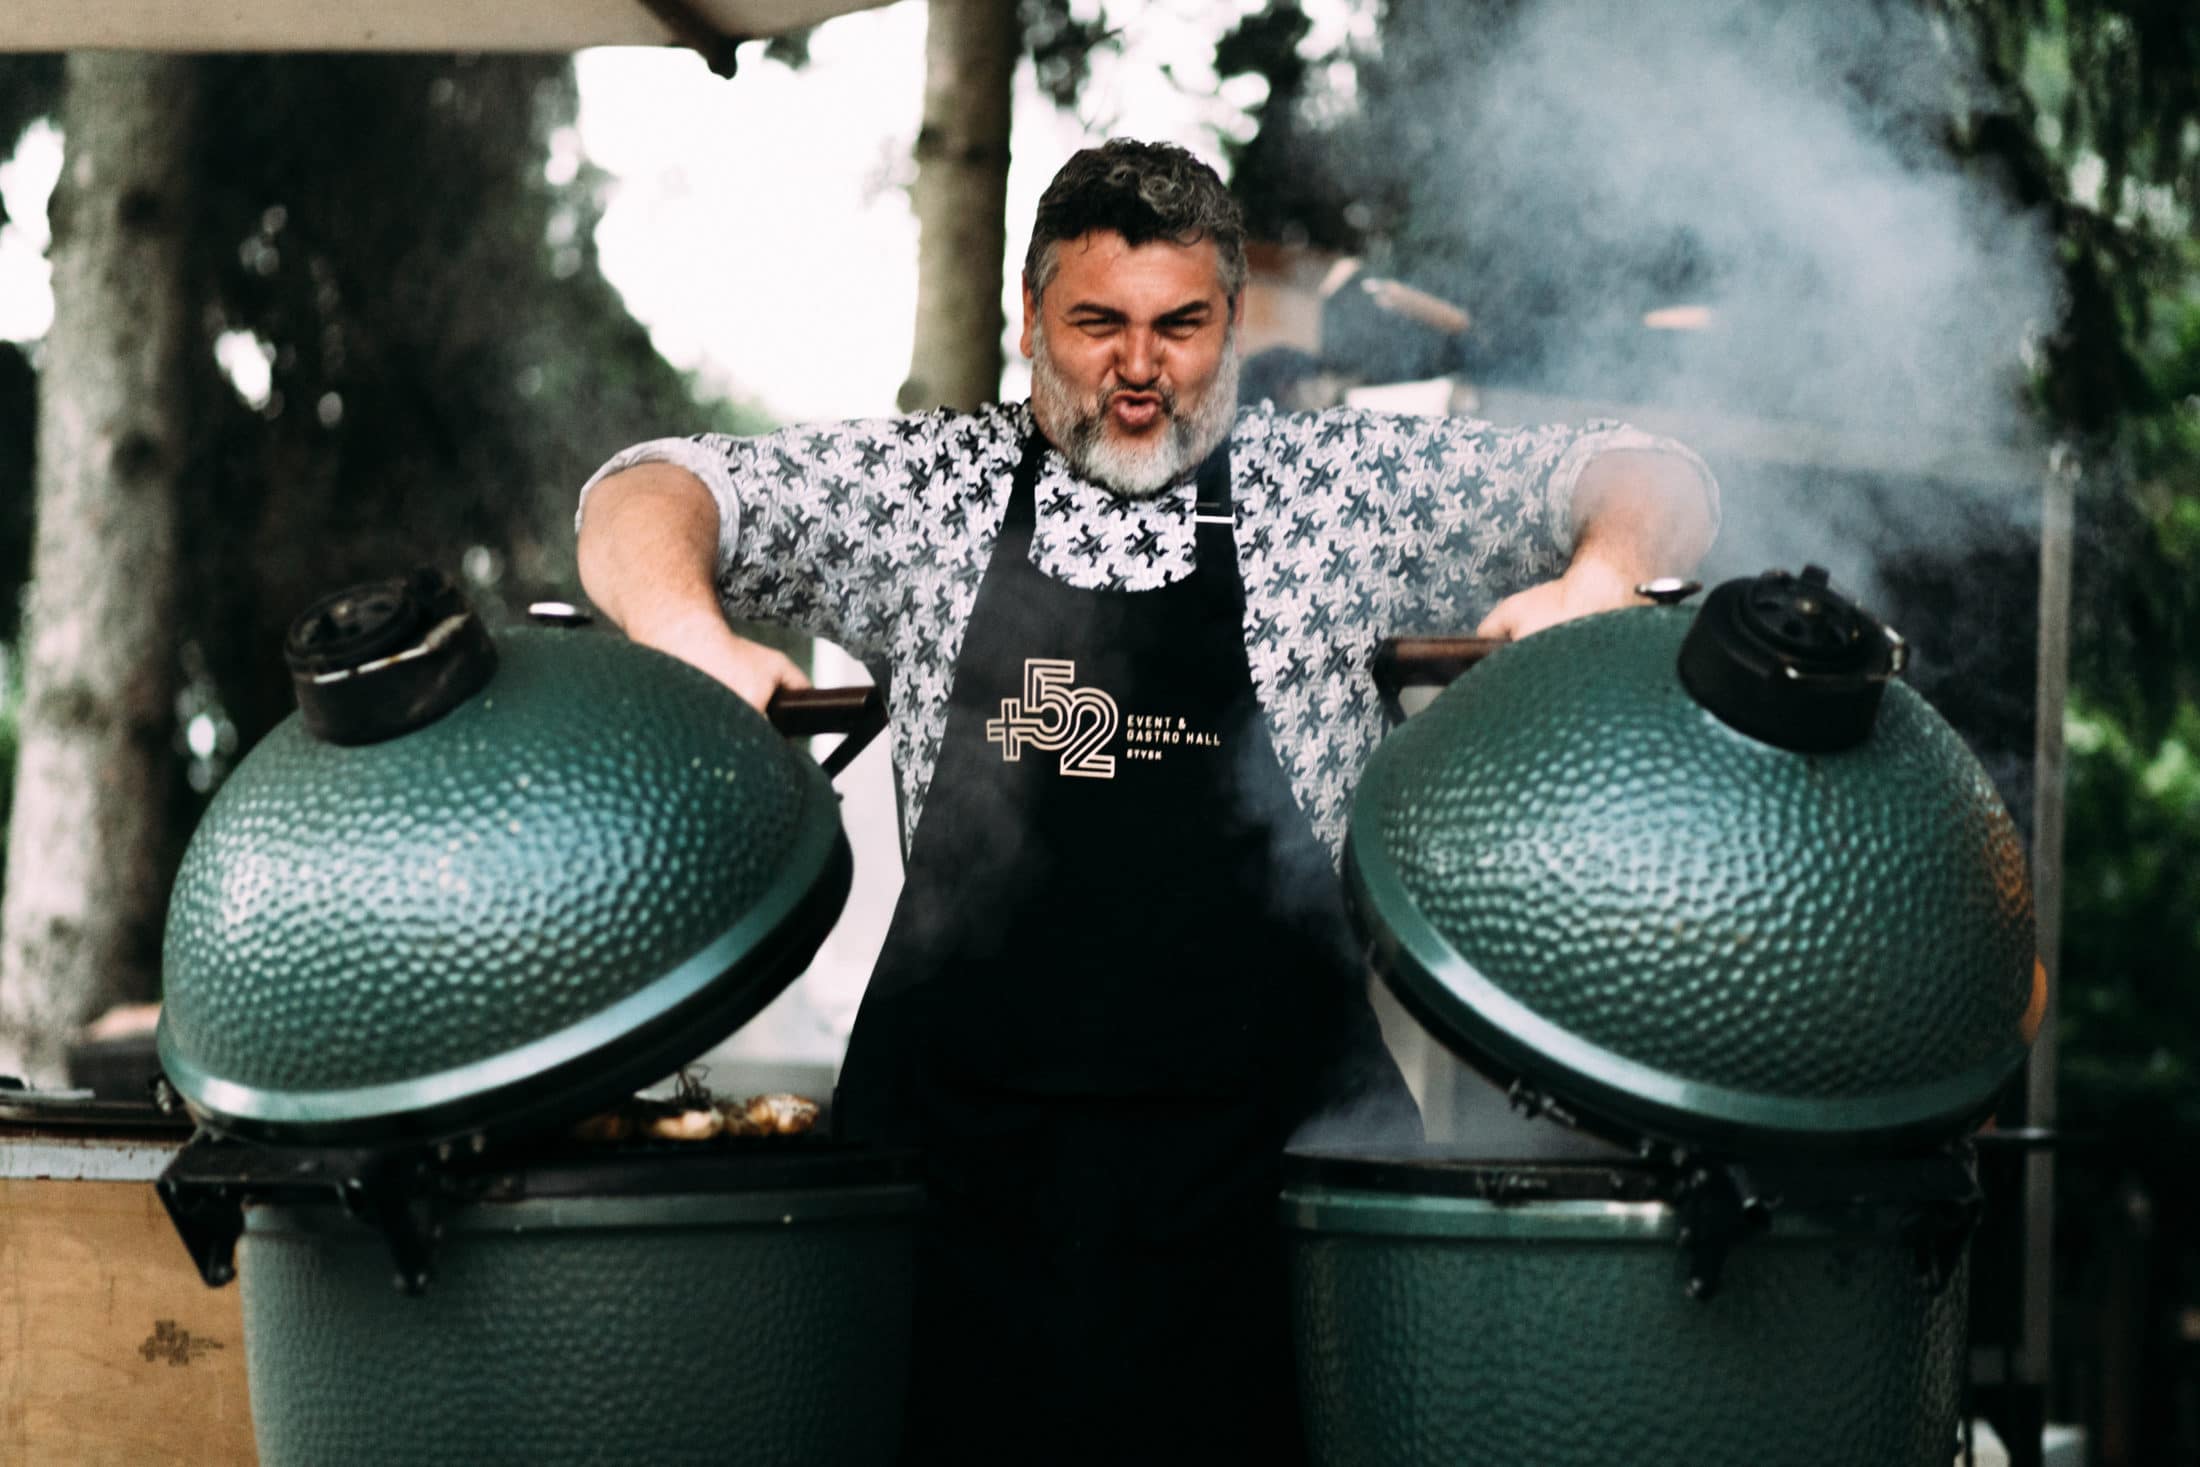 Az intelligencia nem árt egy szakmában, beleértve a BBQ-t is – Interjú Stoller Márton grillmesterrel - Dining Guide